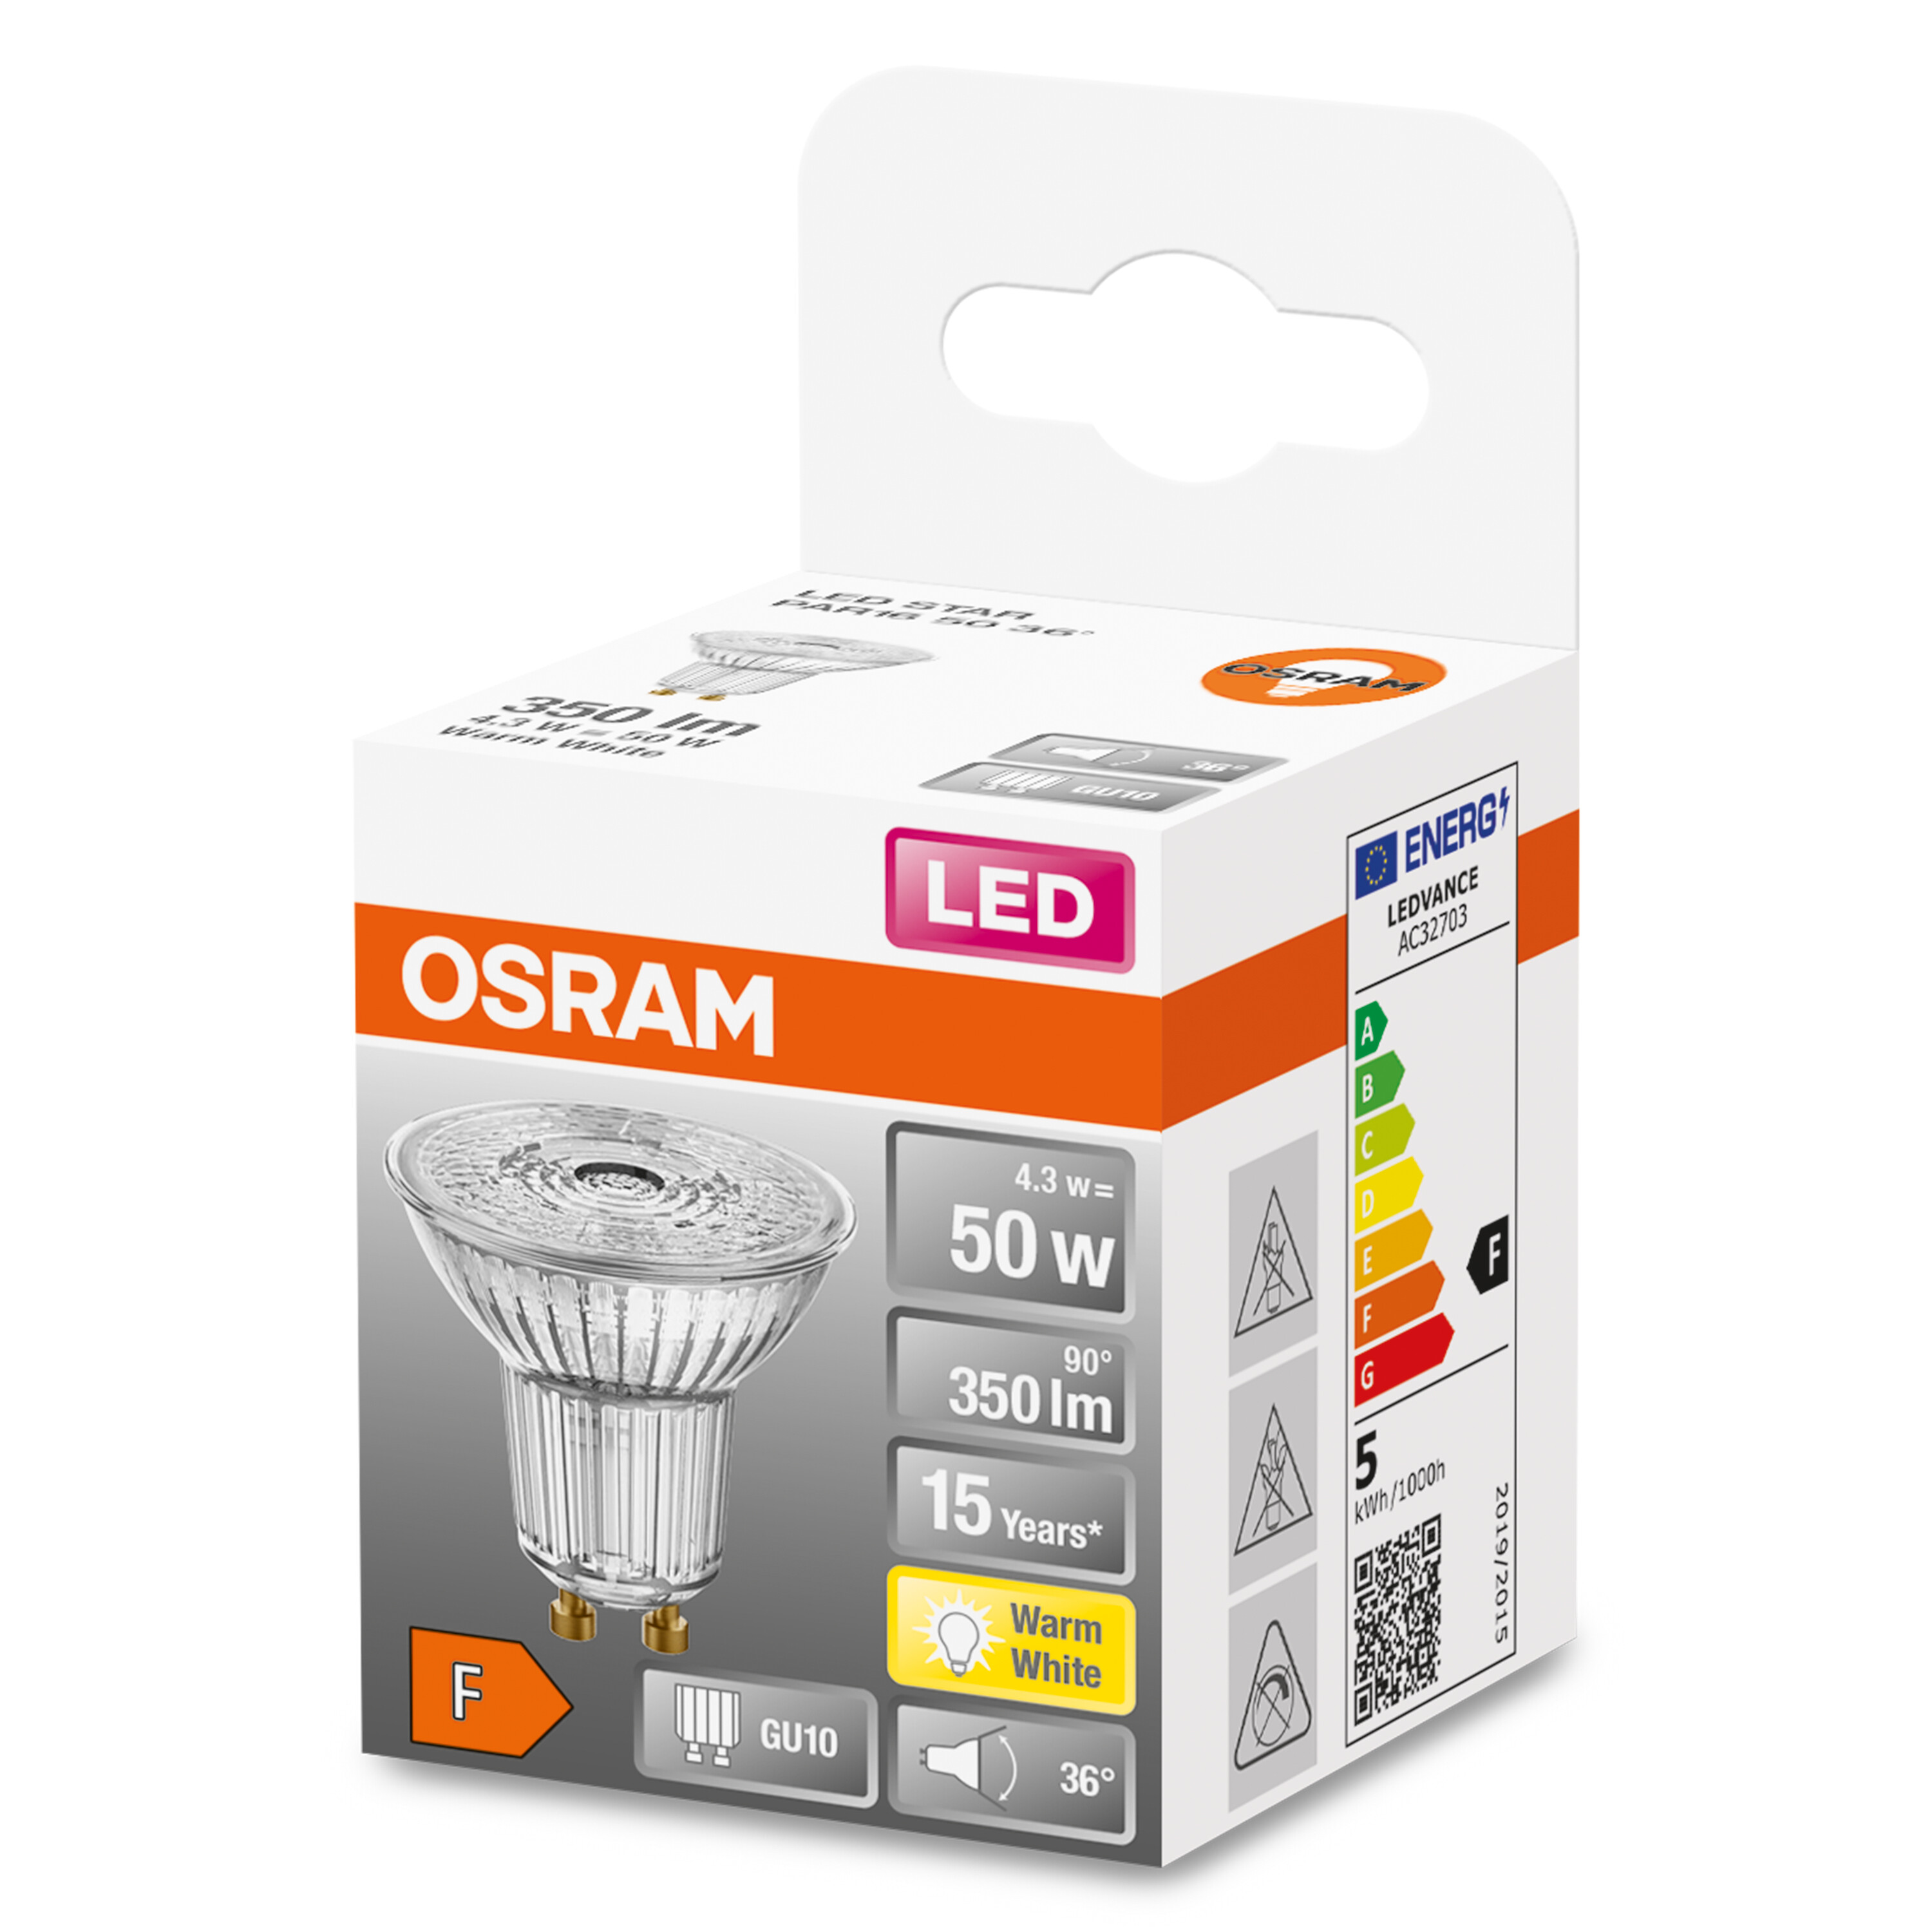 LED STAR LED-Lampe 50 PAR16 4,3W/827 36° Warm OSRAM  GU10 weiß 350LM 350 Lumen BOX